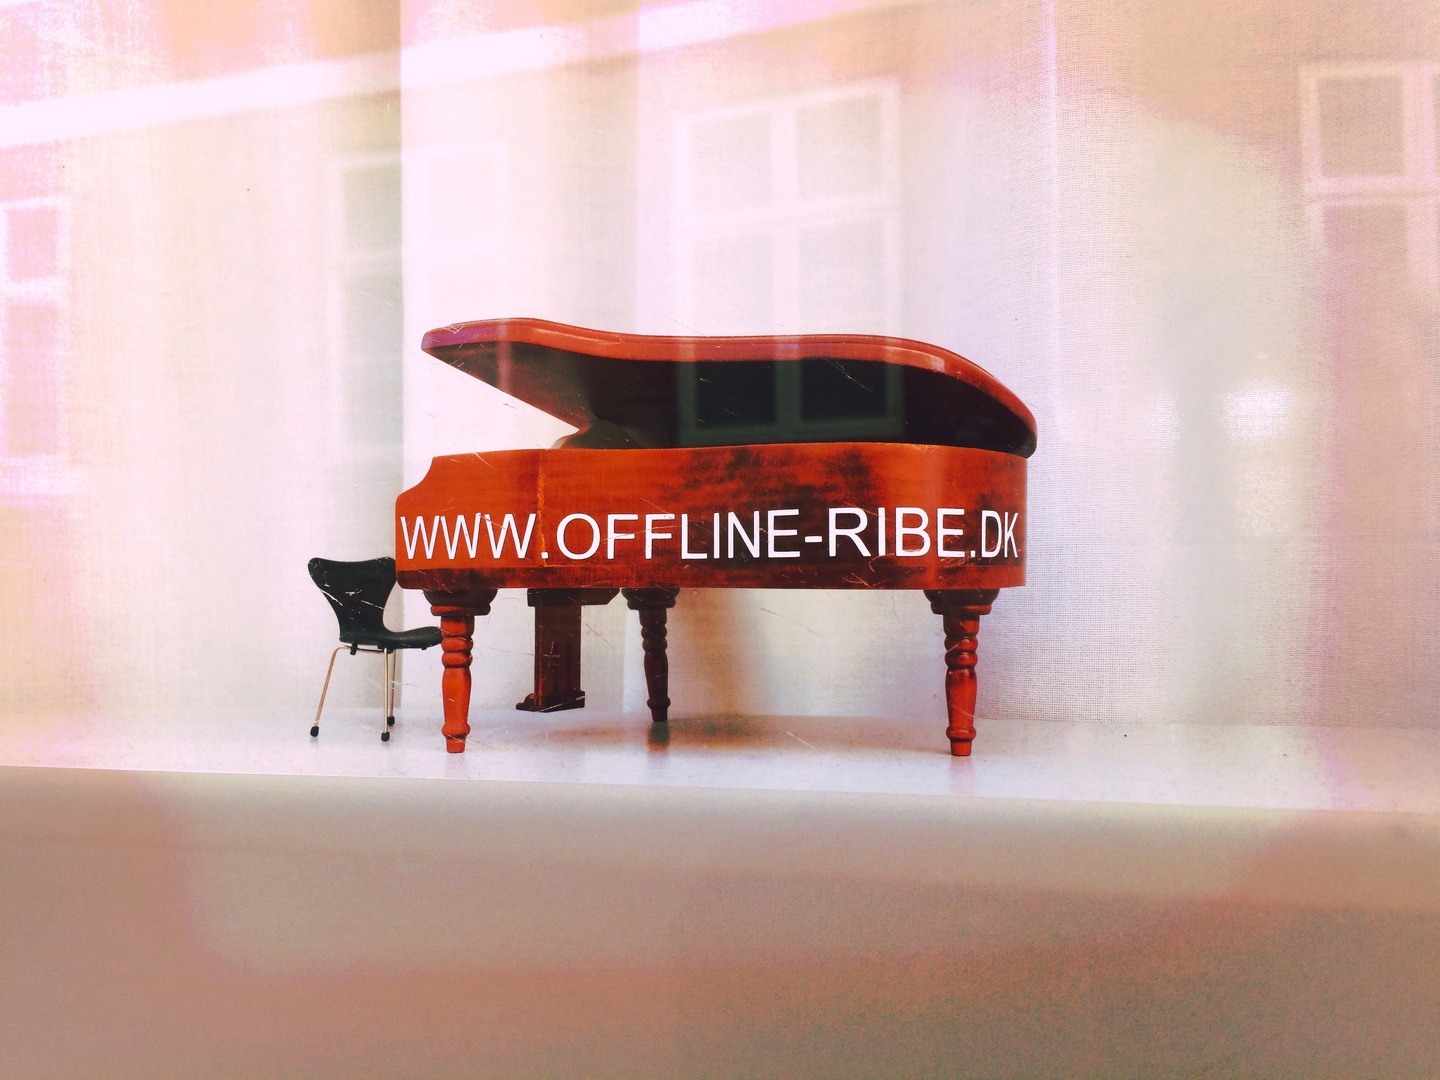 www.offline-ribe.dk